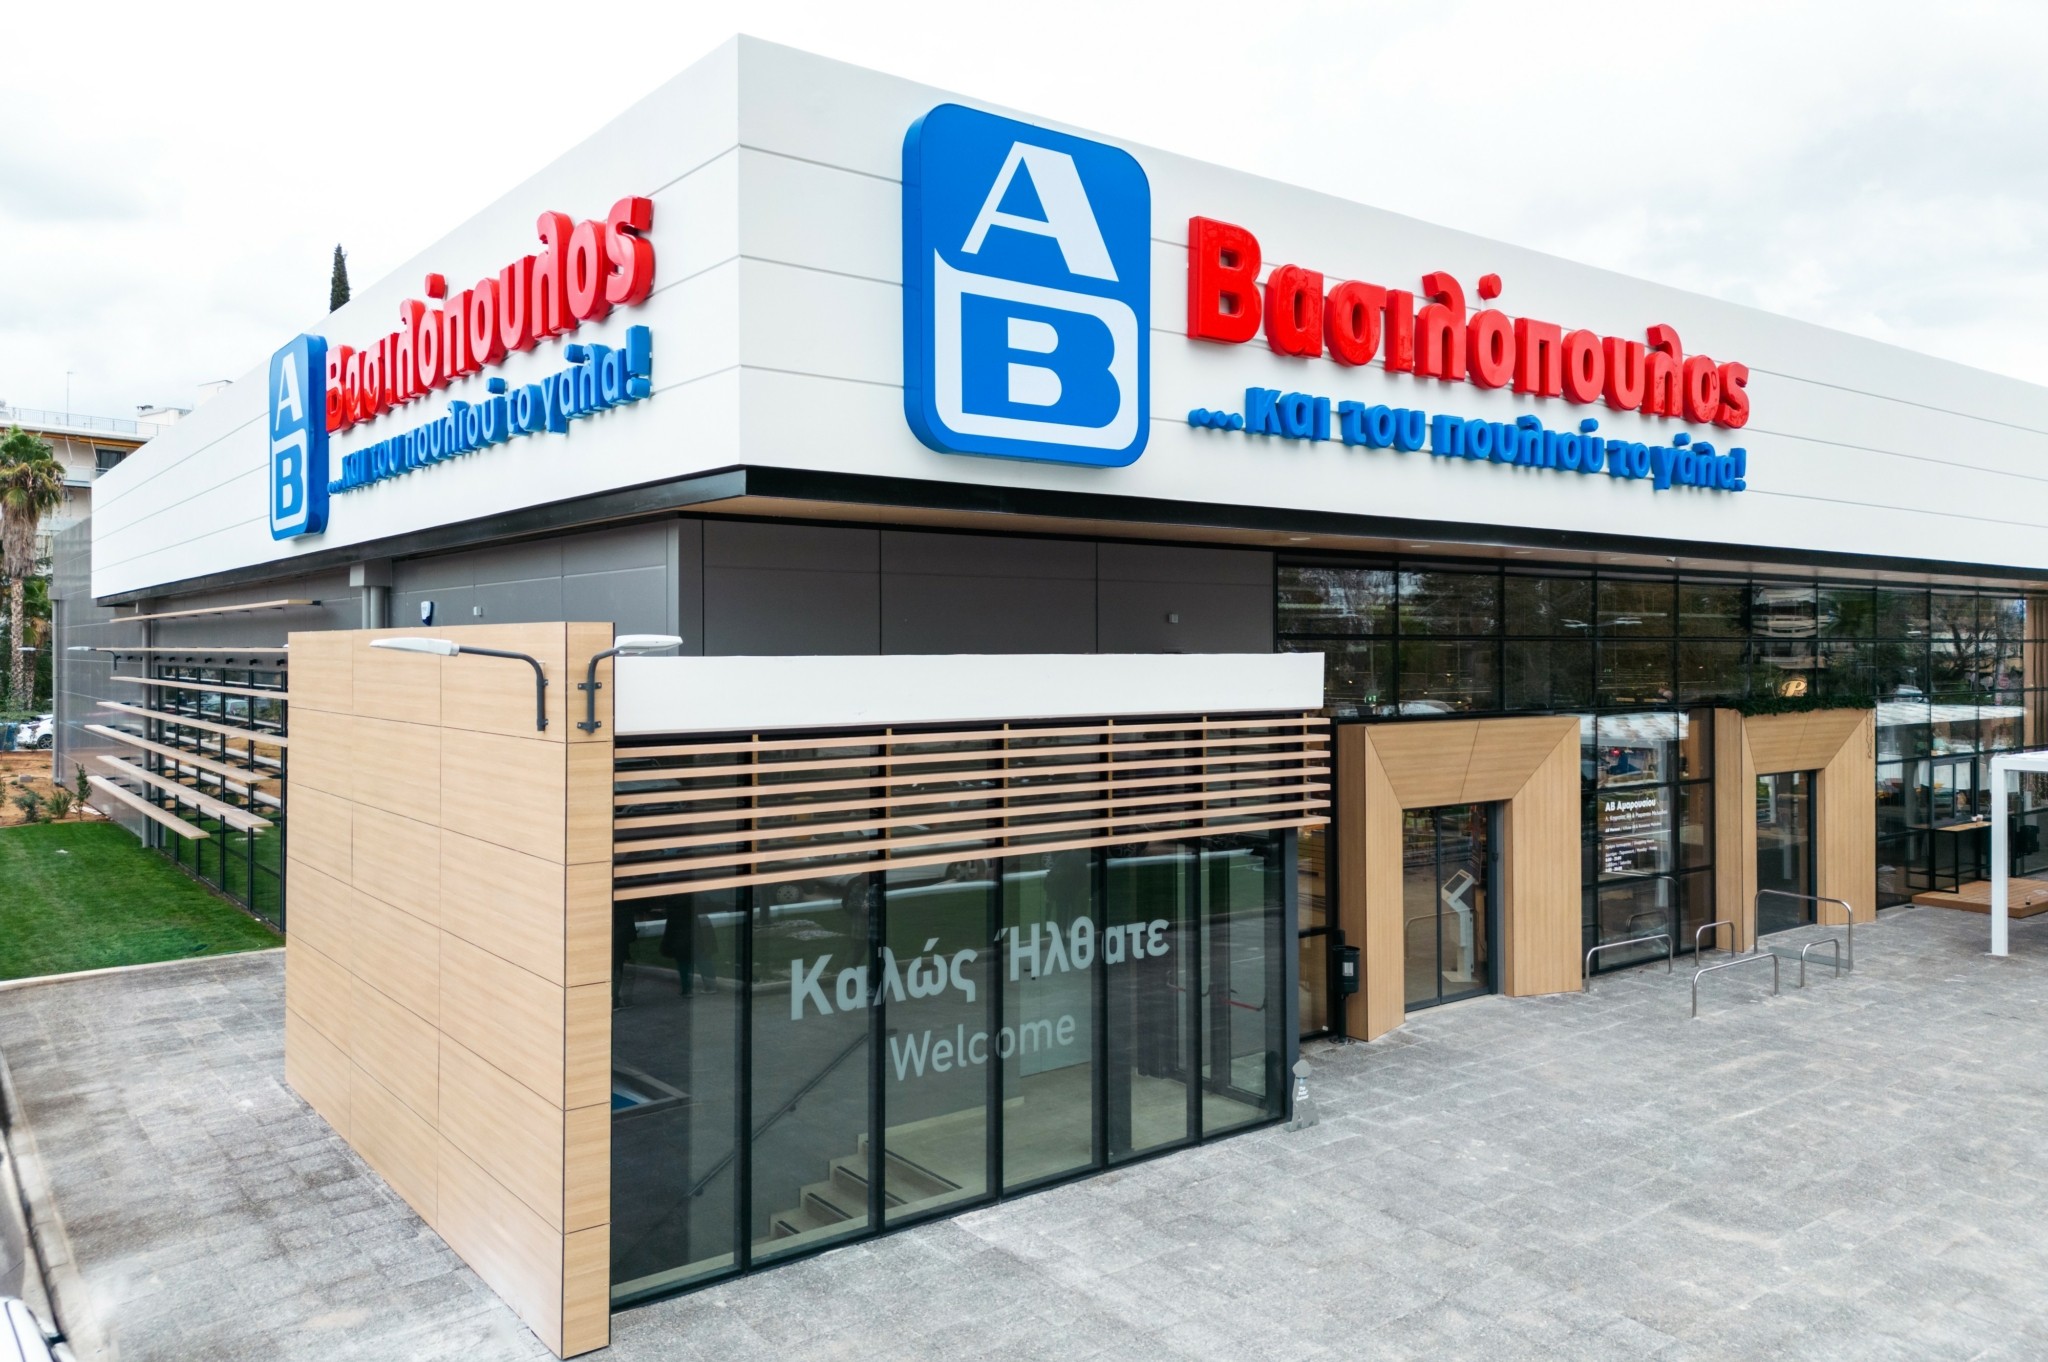 ΑΒ Βασιλόπουλος: Επένδυση 12 εκατ. ευρώ για το νέο κατάστημα – ναυαρχίδα στο Μαρούσι